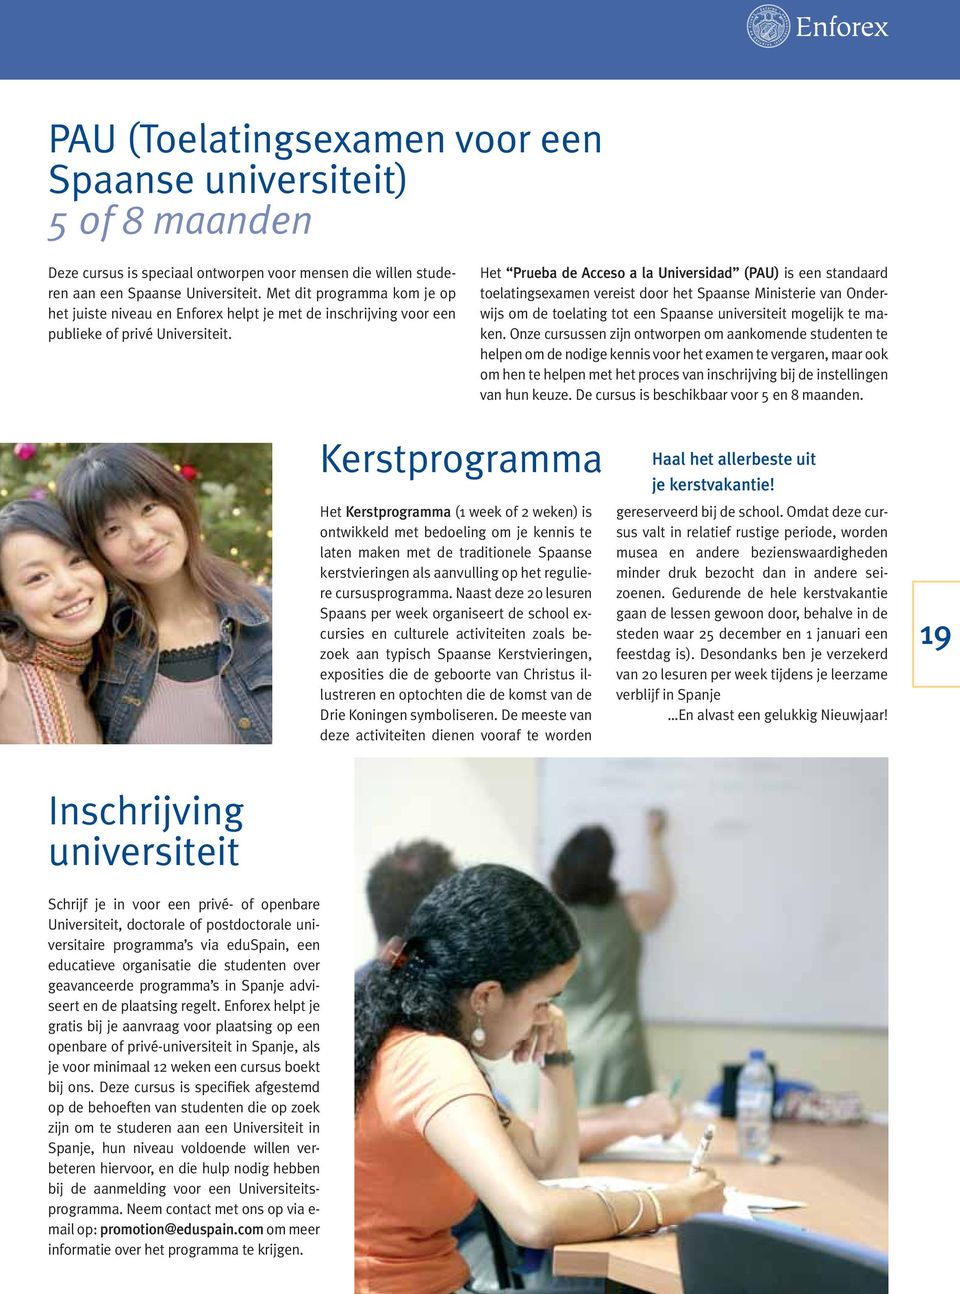 Het Prueba de Acceso a la Universidad (PAU) is een standaard toelatingsexamen vereist door het Spaanse Ministerie van Onderwijs om de toelating tot een Spaanse universiteit mogelijk te maken.